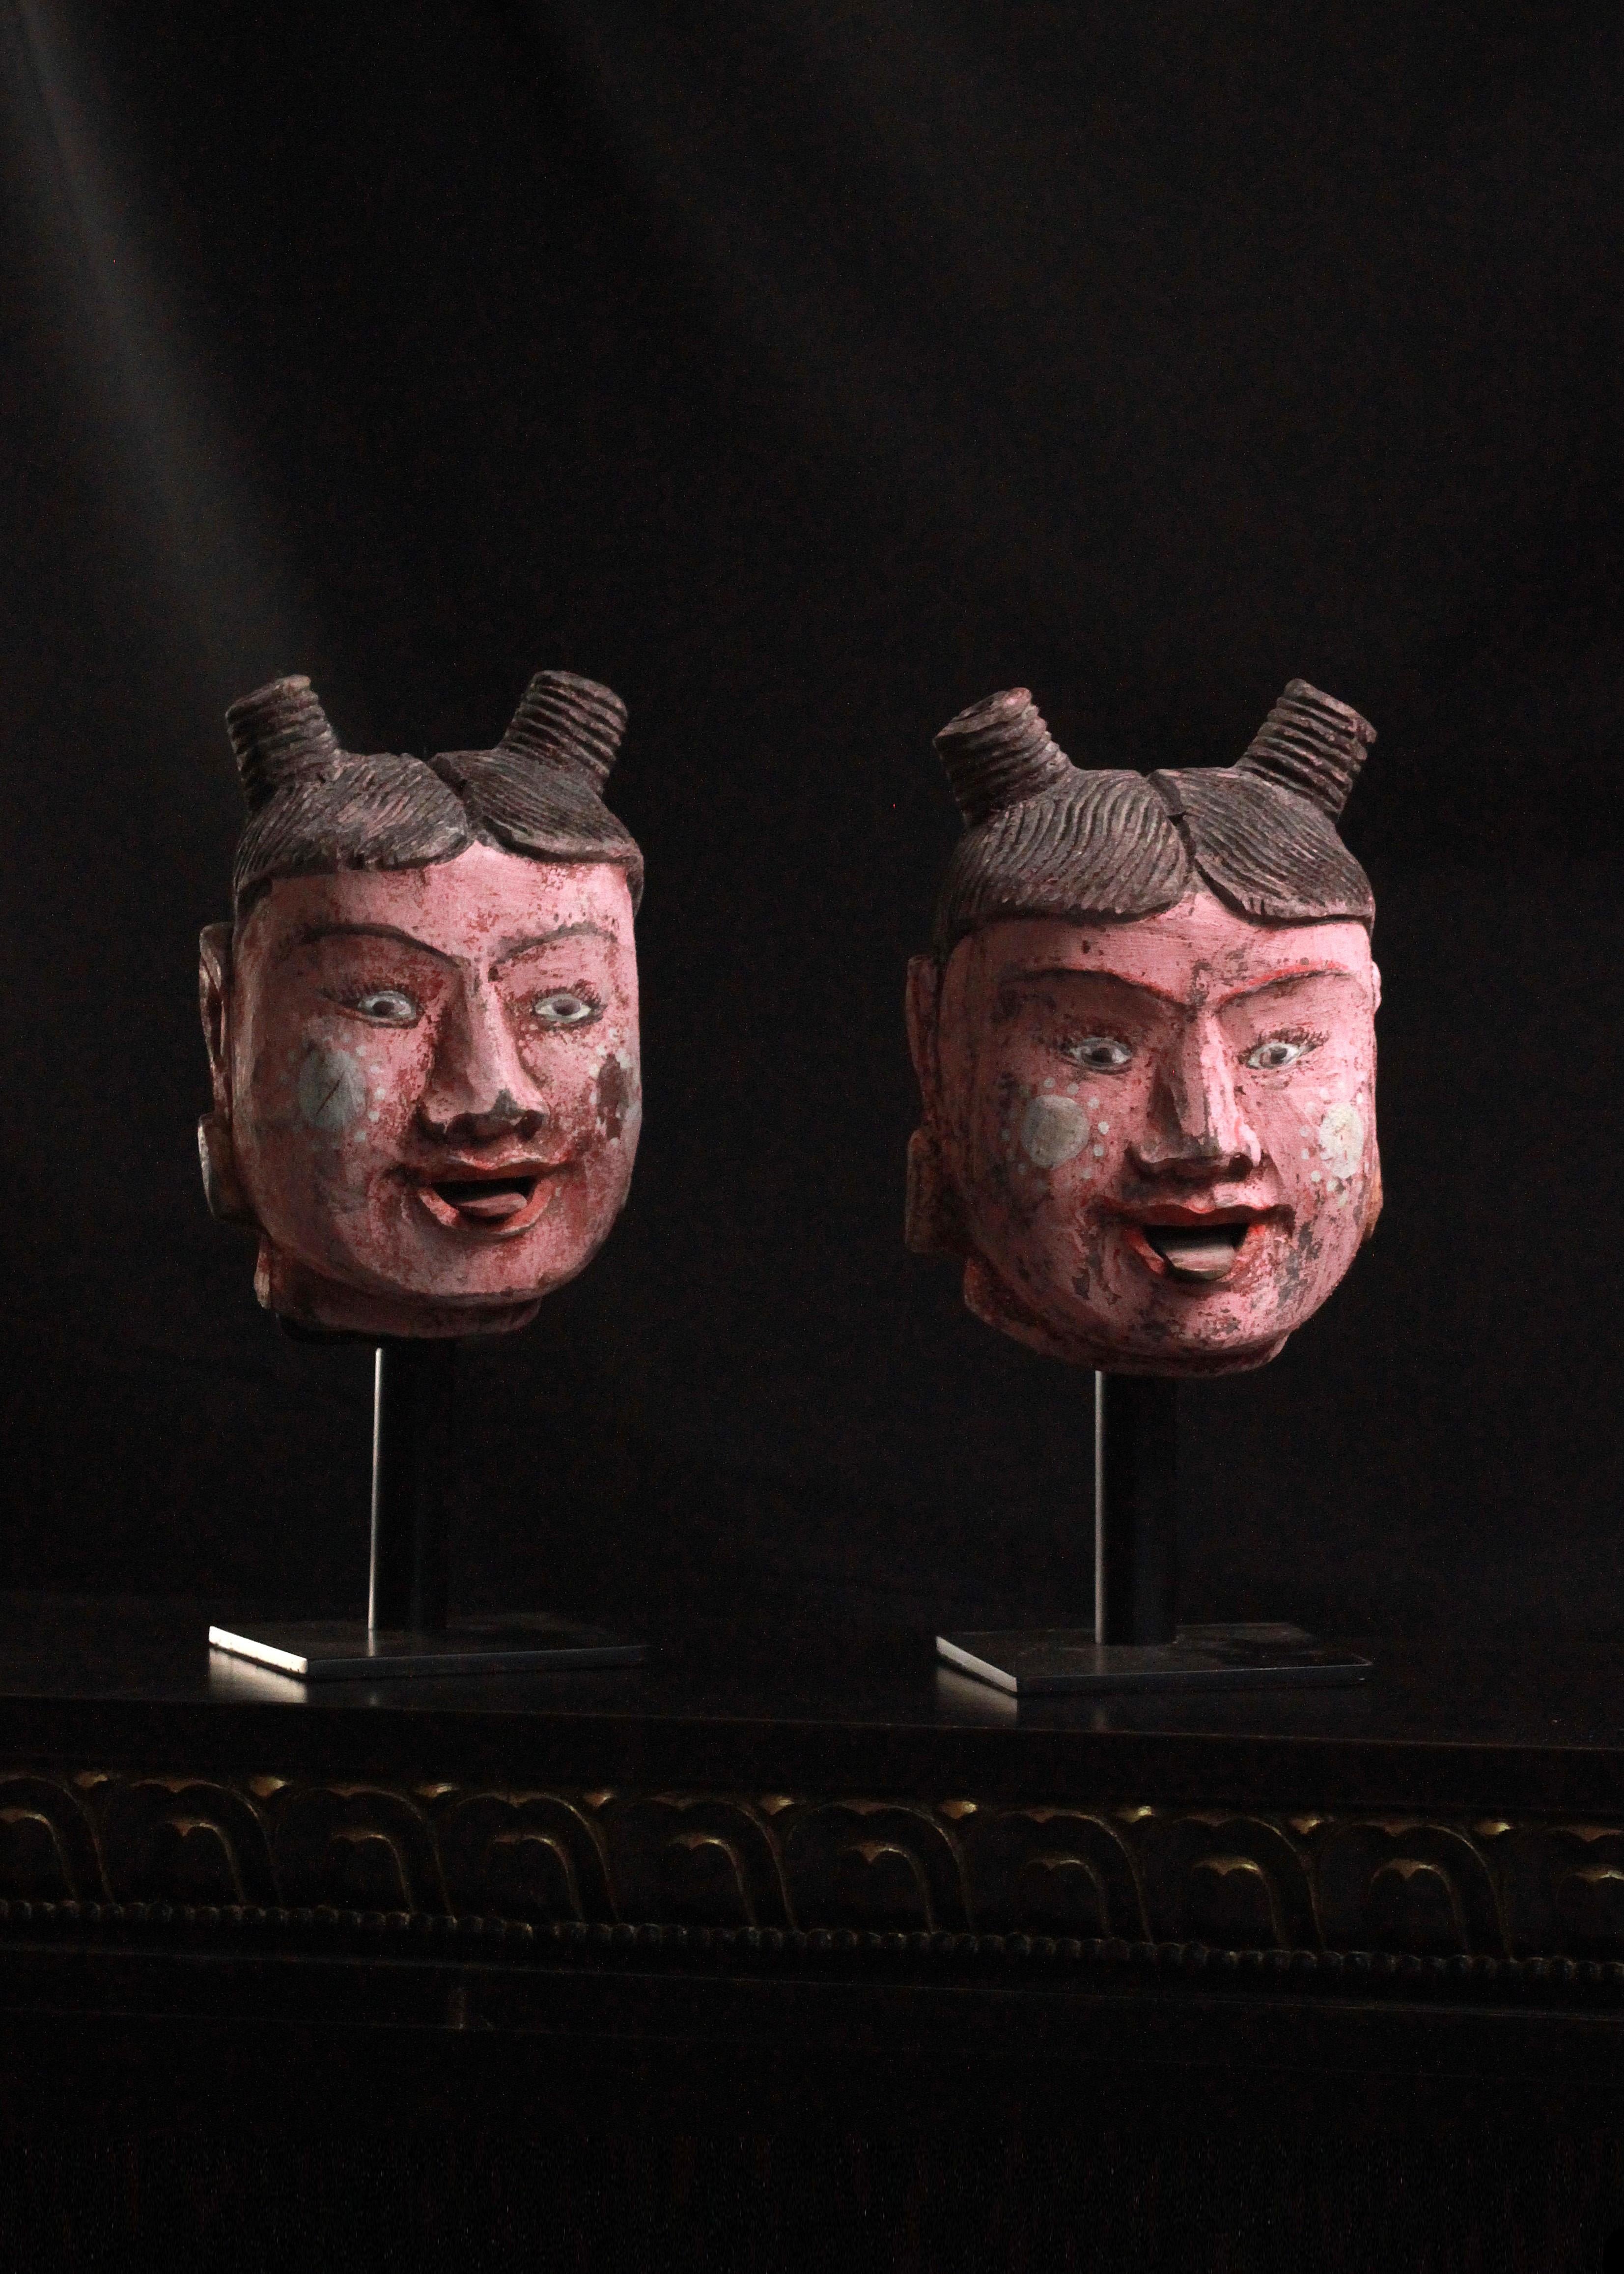 Cet ensemble captivant de deux têtes de marionnettes polychromes, méticuleusement montées, transporte les spectateurs dans le monde vibrant de l'art birman. Fabriquées à la main, ces têtes de marionnettes expressives sont pleines de caractère. Leurs